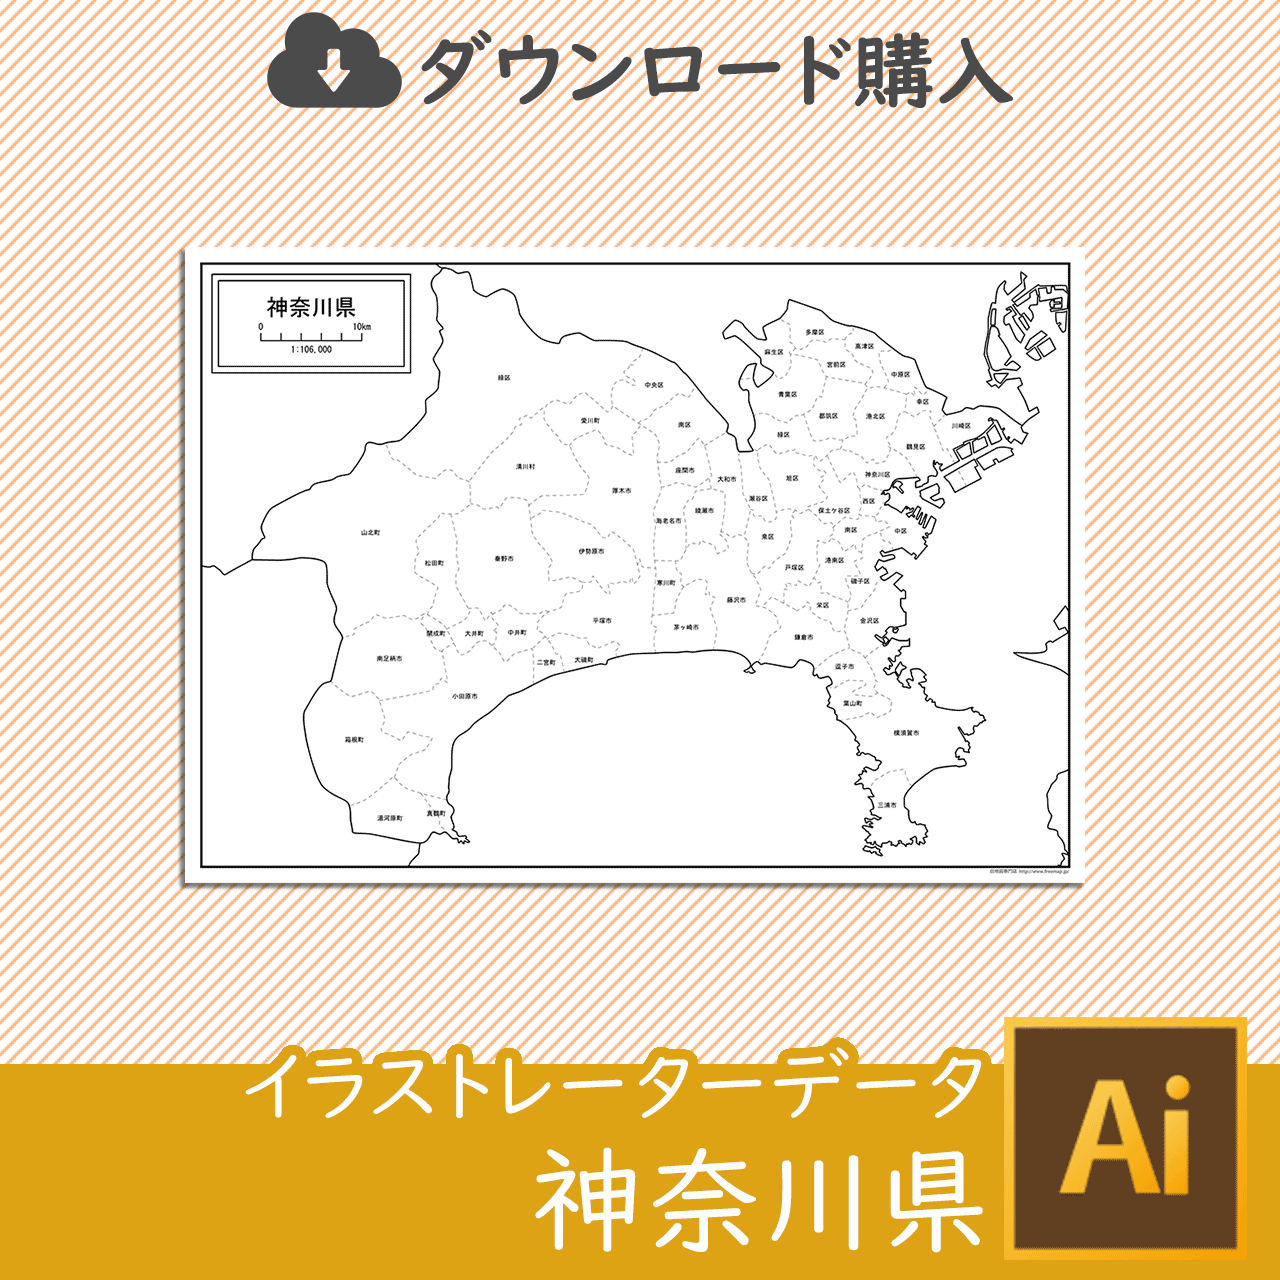 神奈川県のaiデータのサムネイル画像